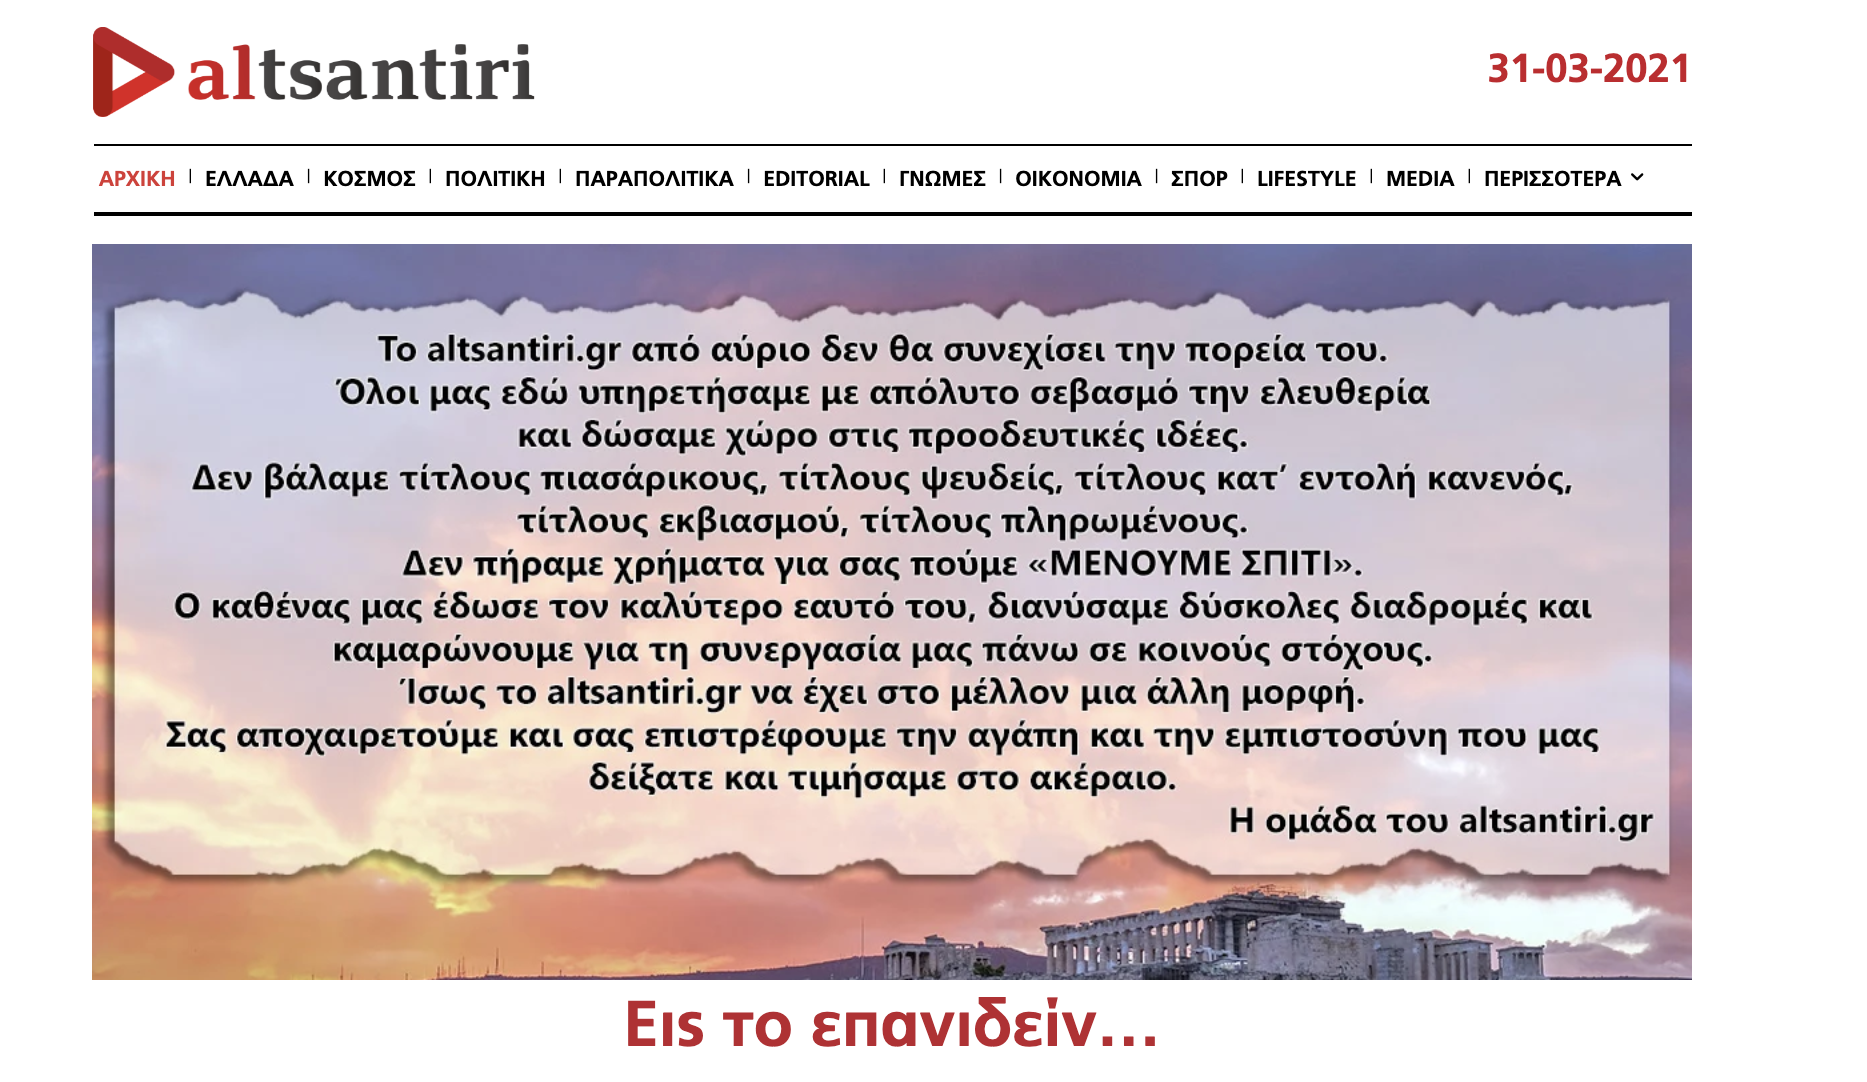 Λάκης Λαζόπουλος: Οριστικό τέλος για το altsantiri.gr - Η επίσημη ανακοίνωση